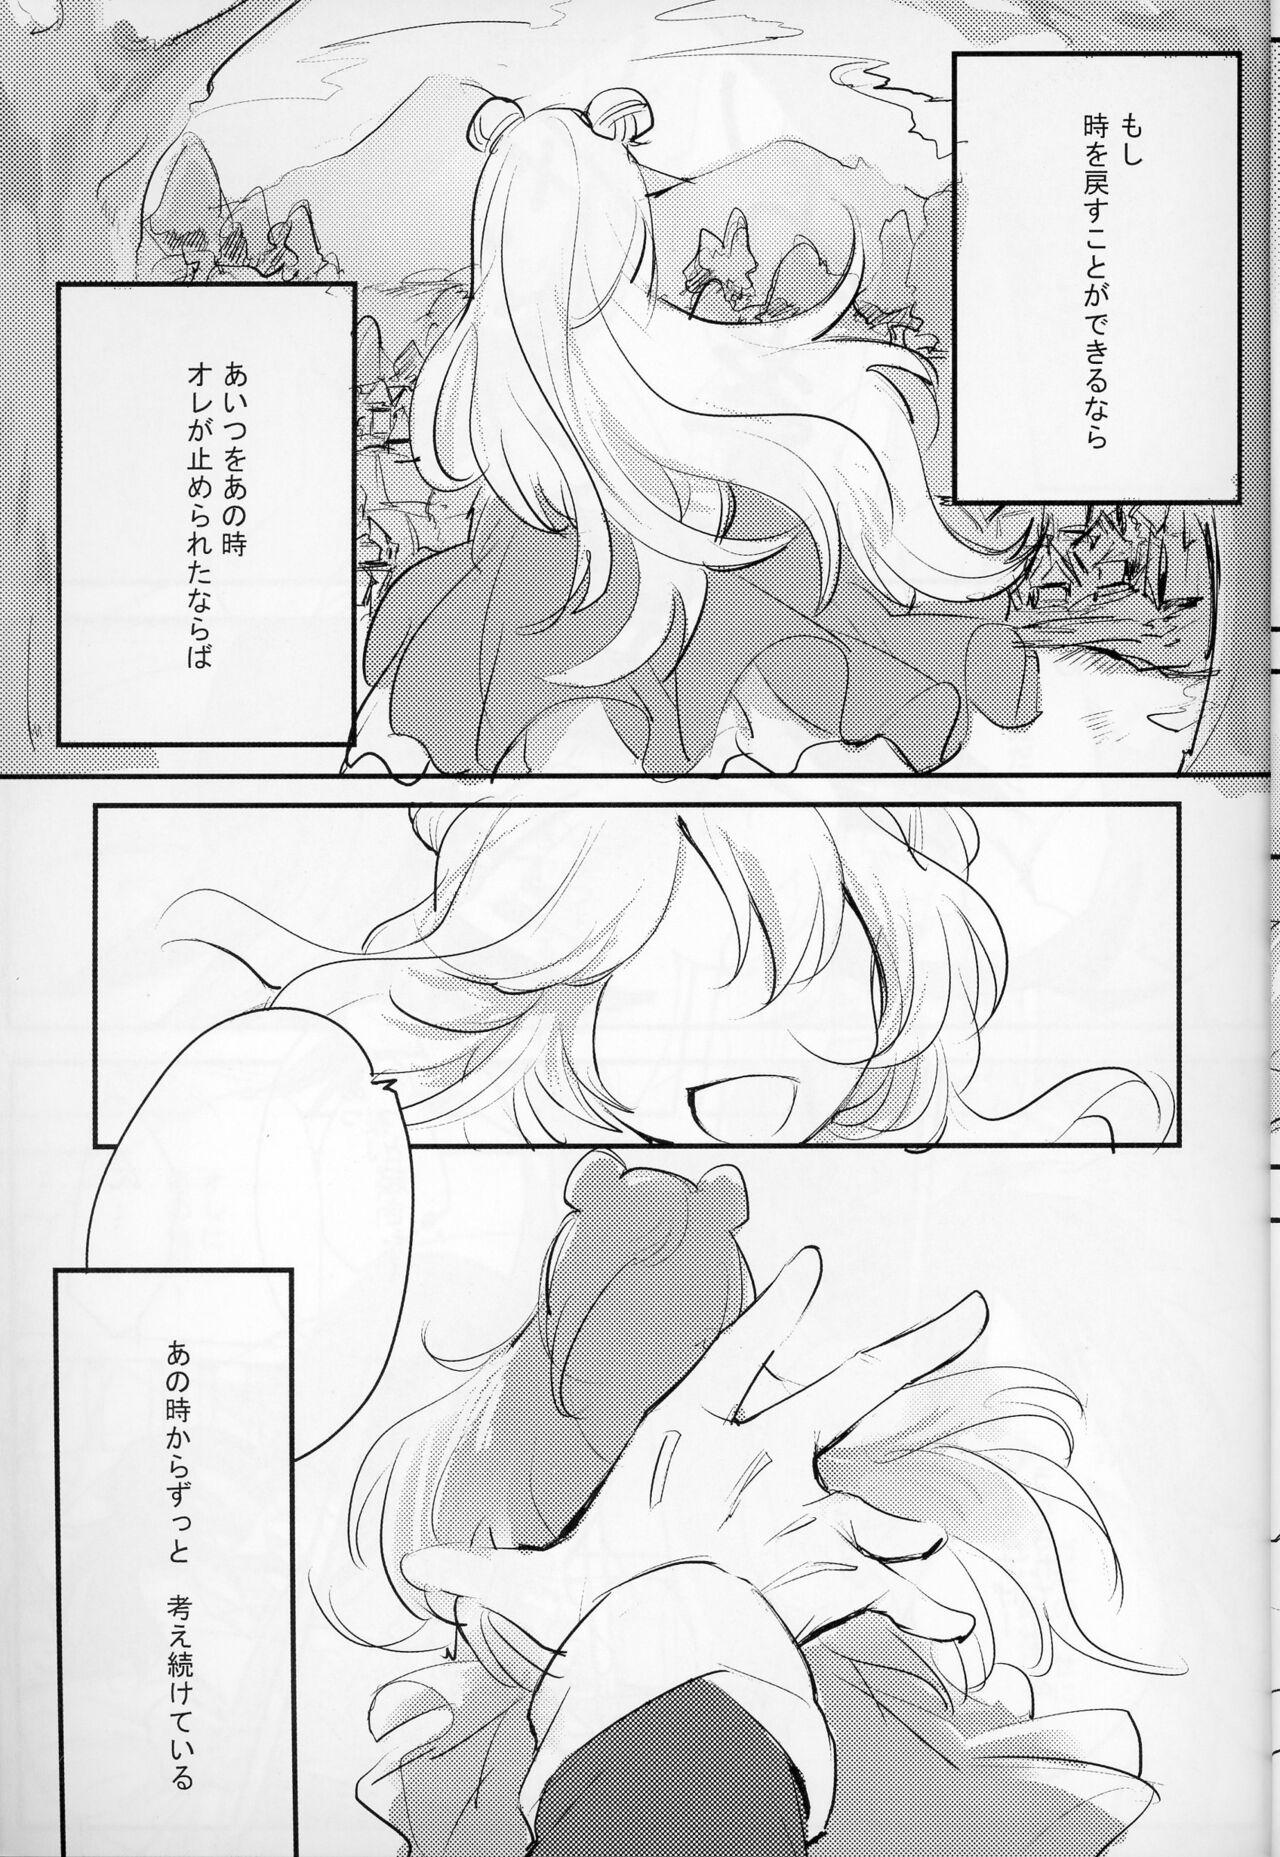 Bj Pleasure - Kaitou joker Body - Page 8